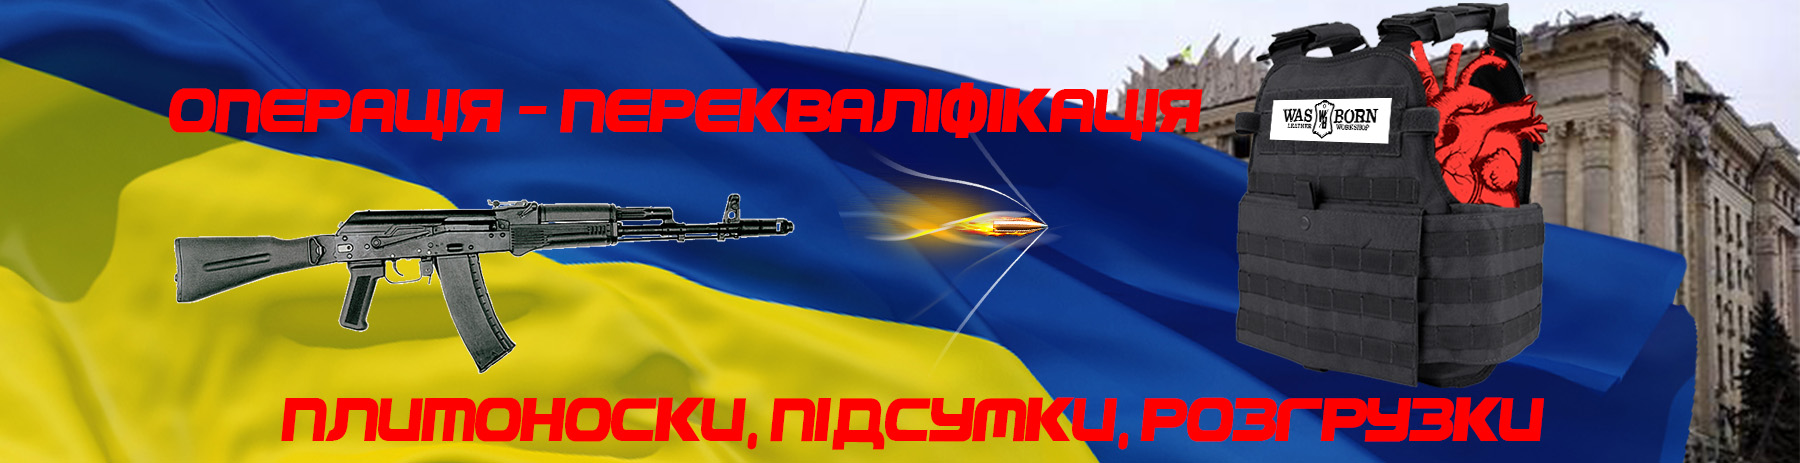 Слава Україні WasBorn